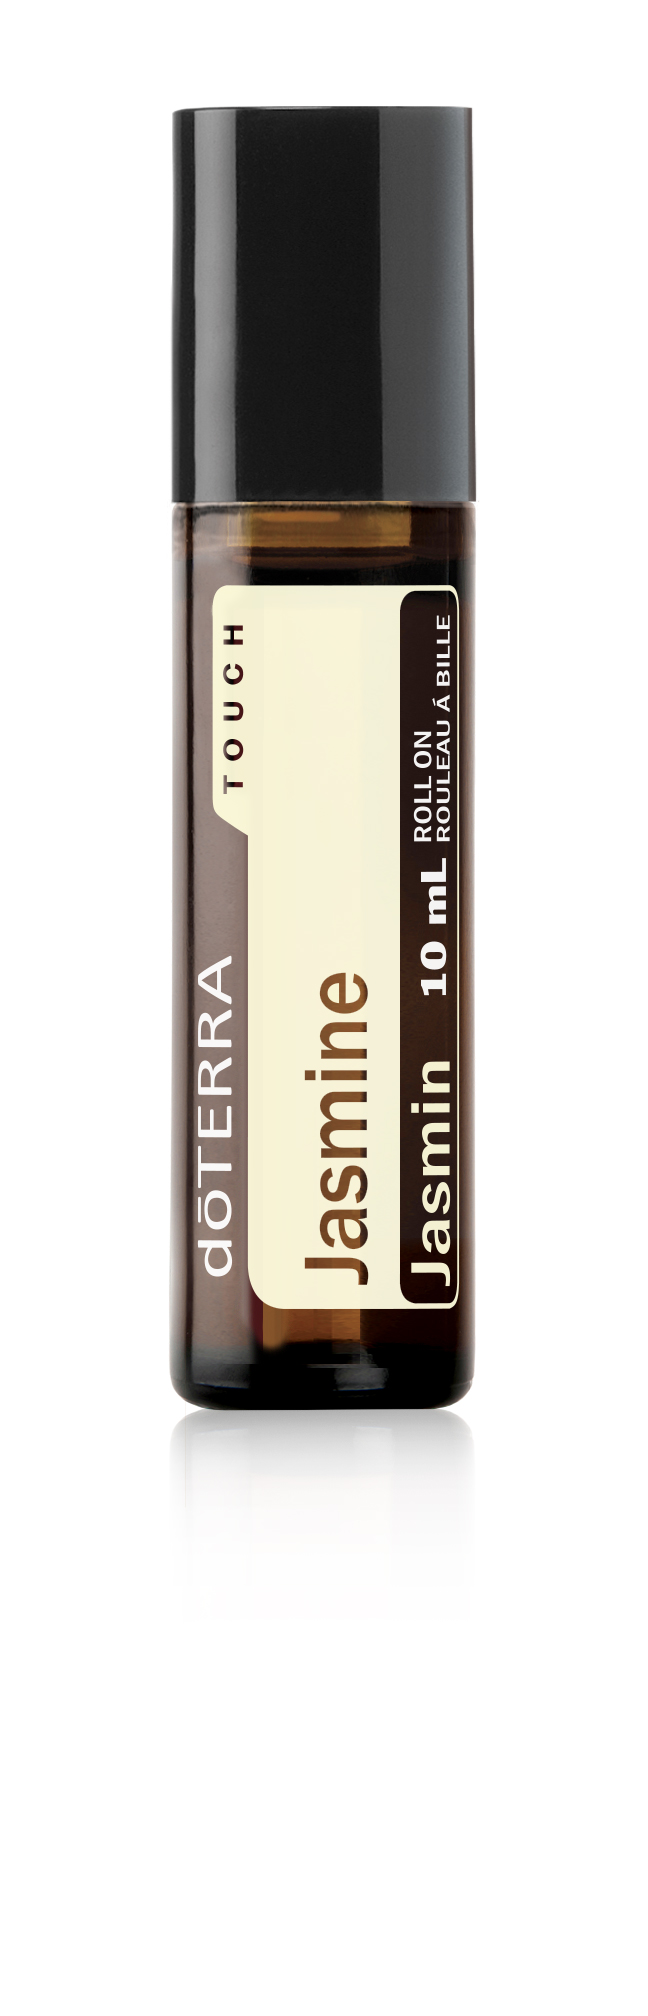 doTERRA Touch Jasmine | dōTERRA Essential Oils